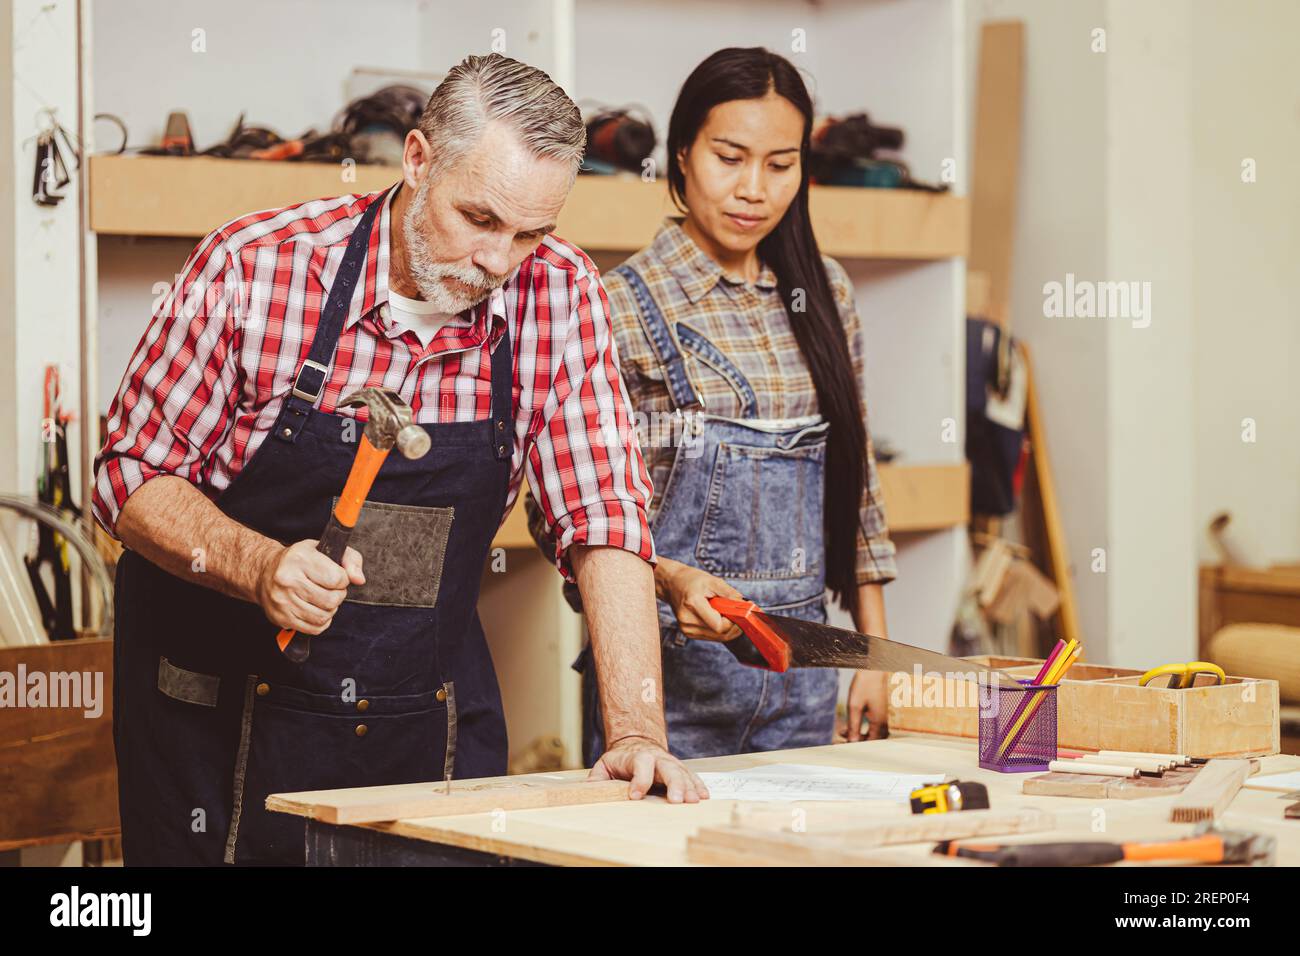 Cheffachmann, weiß, männlicher heimwerker, Holzarbeiten, reparieren Heimmöbel in der Werkstatt, Ehefrau hilft. Stockfoto